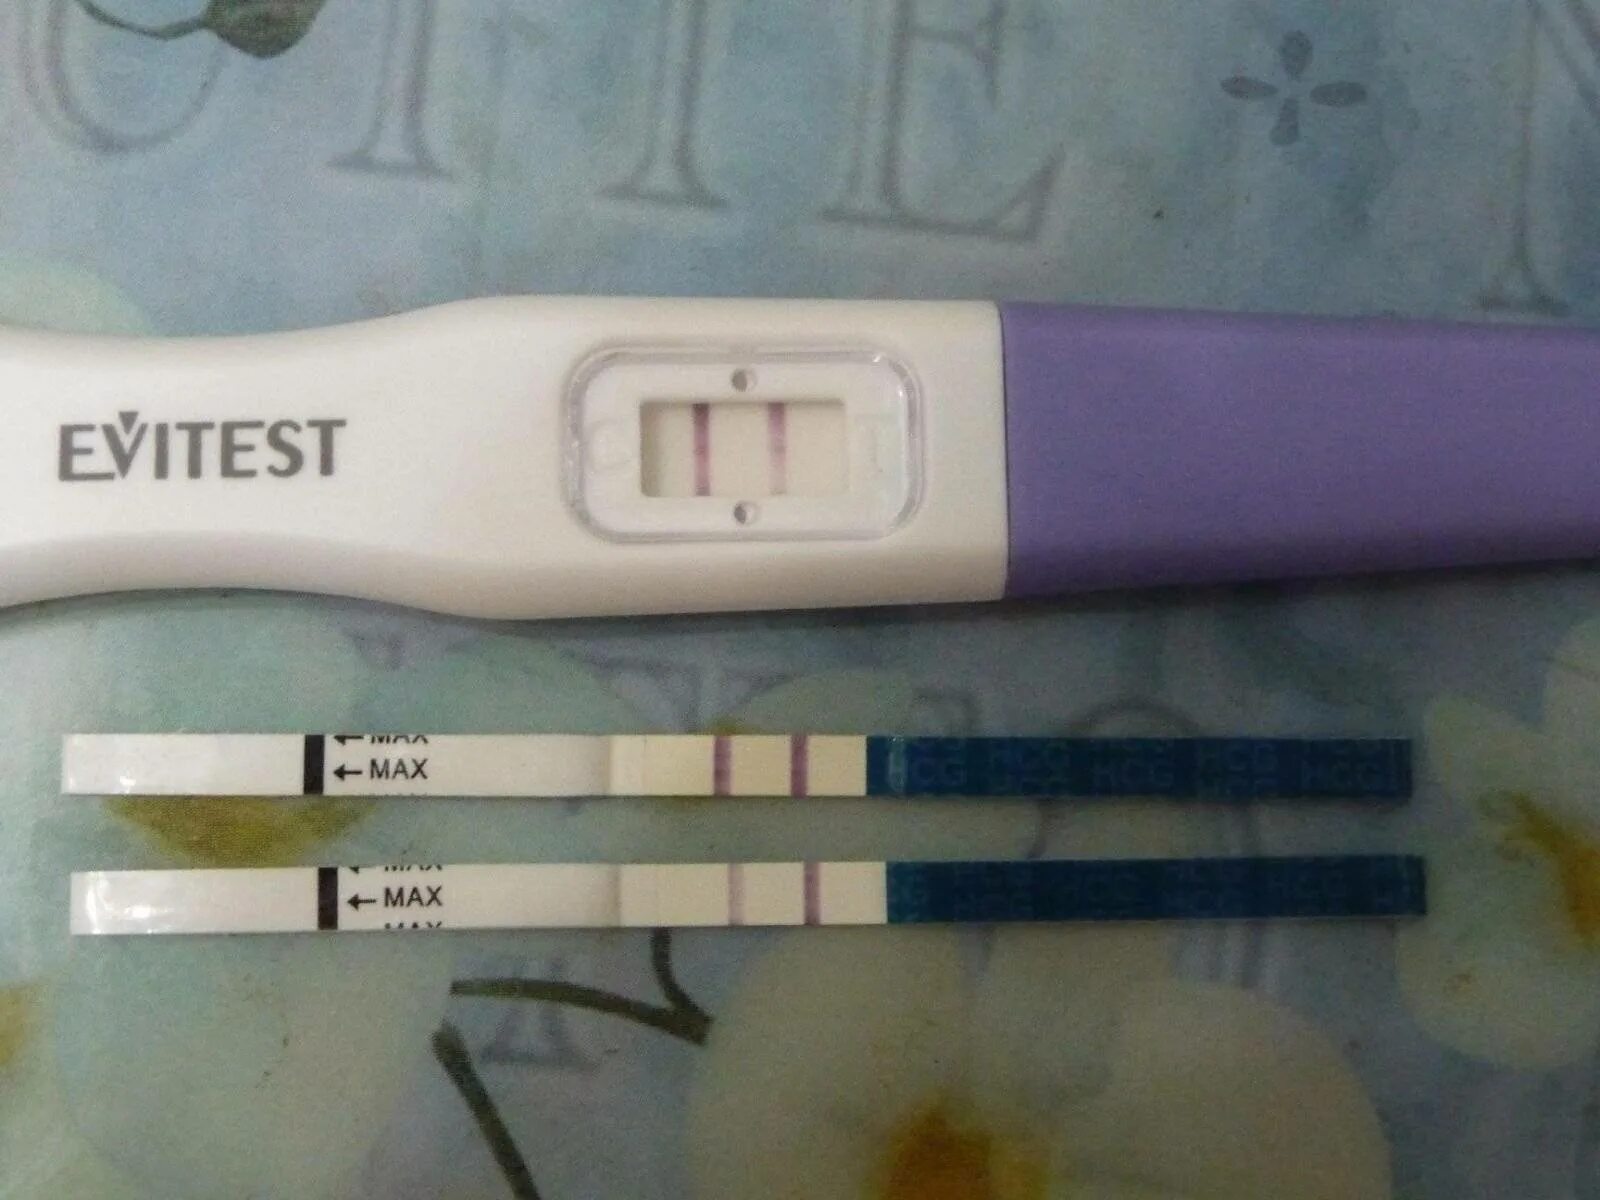 Тест на беременность 4 дня до задержки. Тест на беременность за 2-3 дня до задержки. Струйный тест эвитест за 3 дня до месячных. Тест на беременность 10 день цикла эвитест.